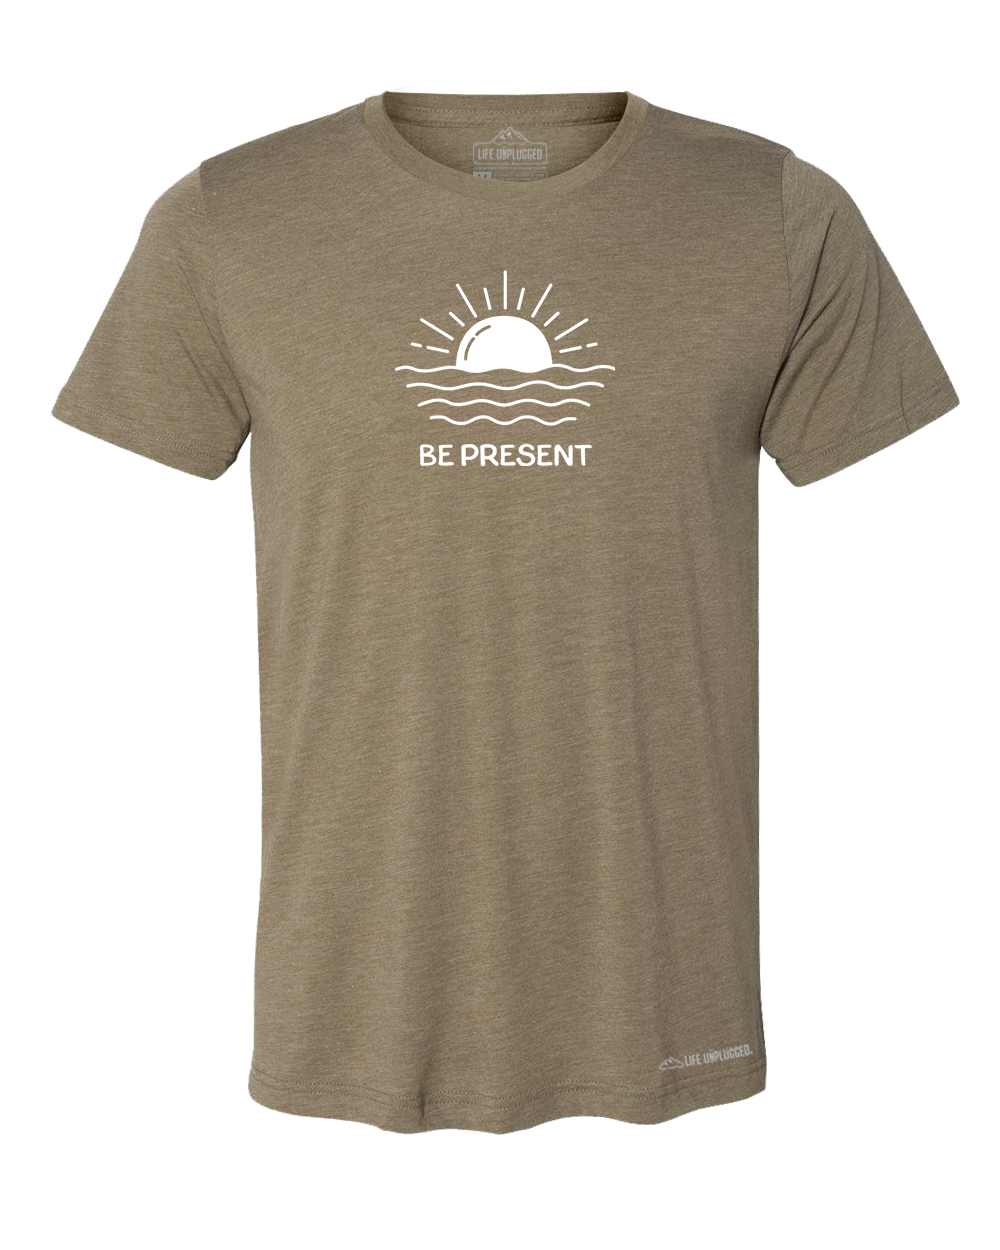 OCEAN SUNSET Premium Triblend T-Shirt